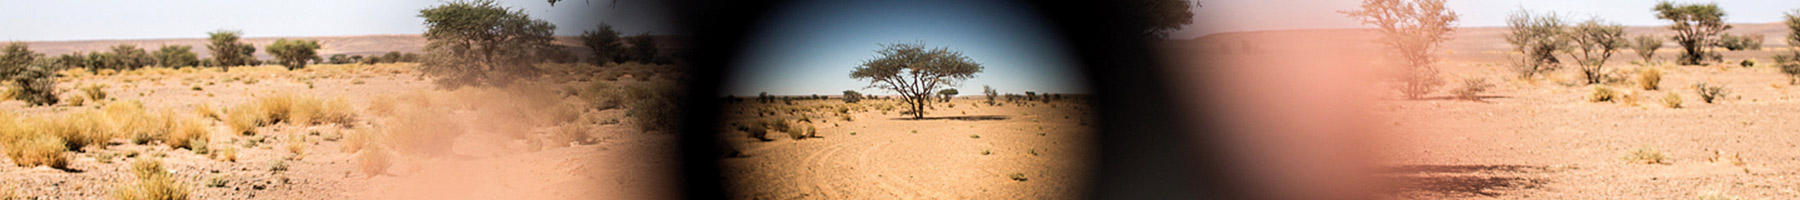 trees in the Sahara desert